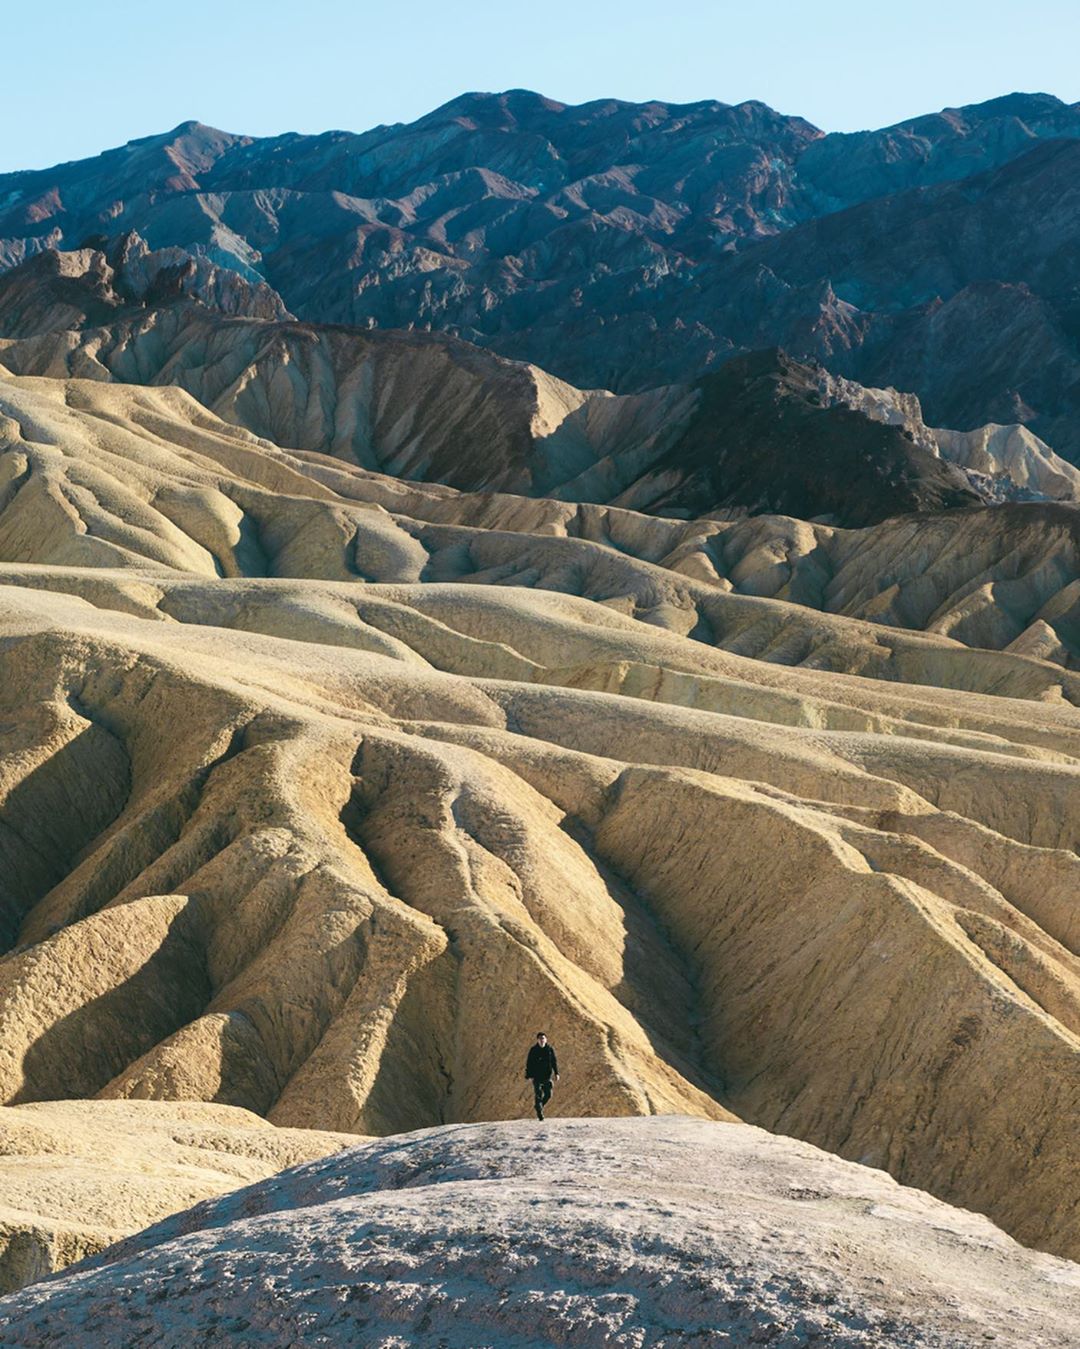 Фотограф и путешественник Бенджамин Ли делится своими восхитительными работами планета,природа,тревел-фото